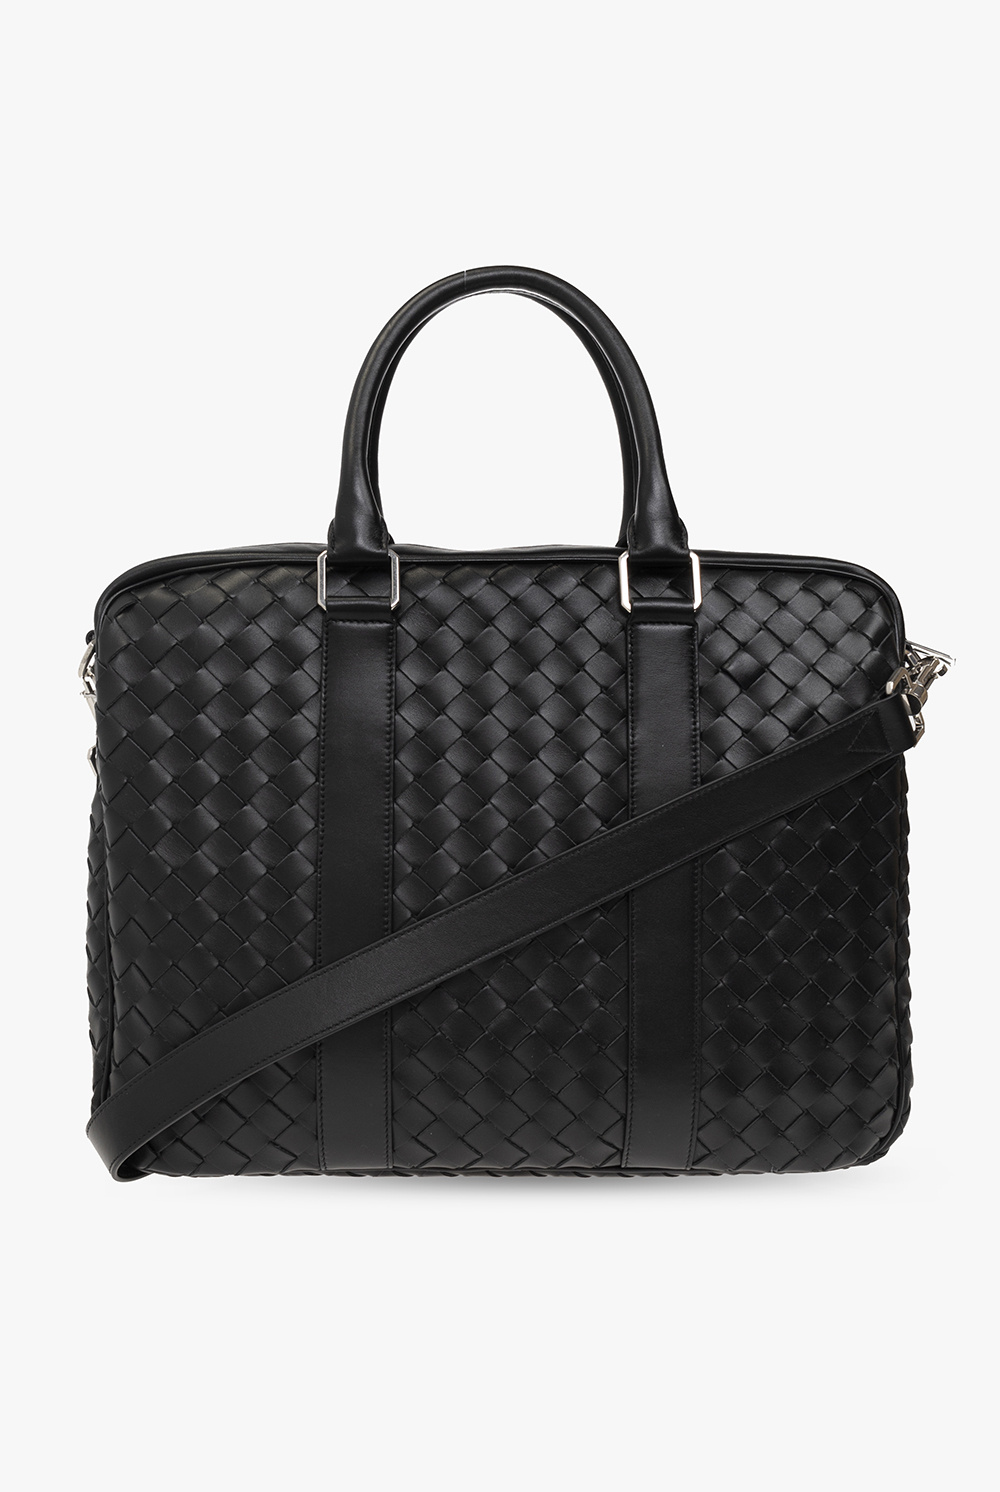 Bottega Veneta ‘Classic Intrecciato Large’ briefcase